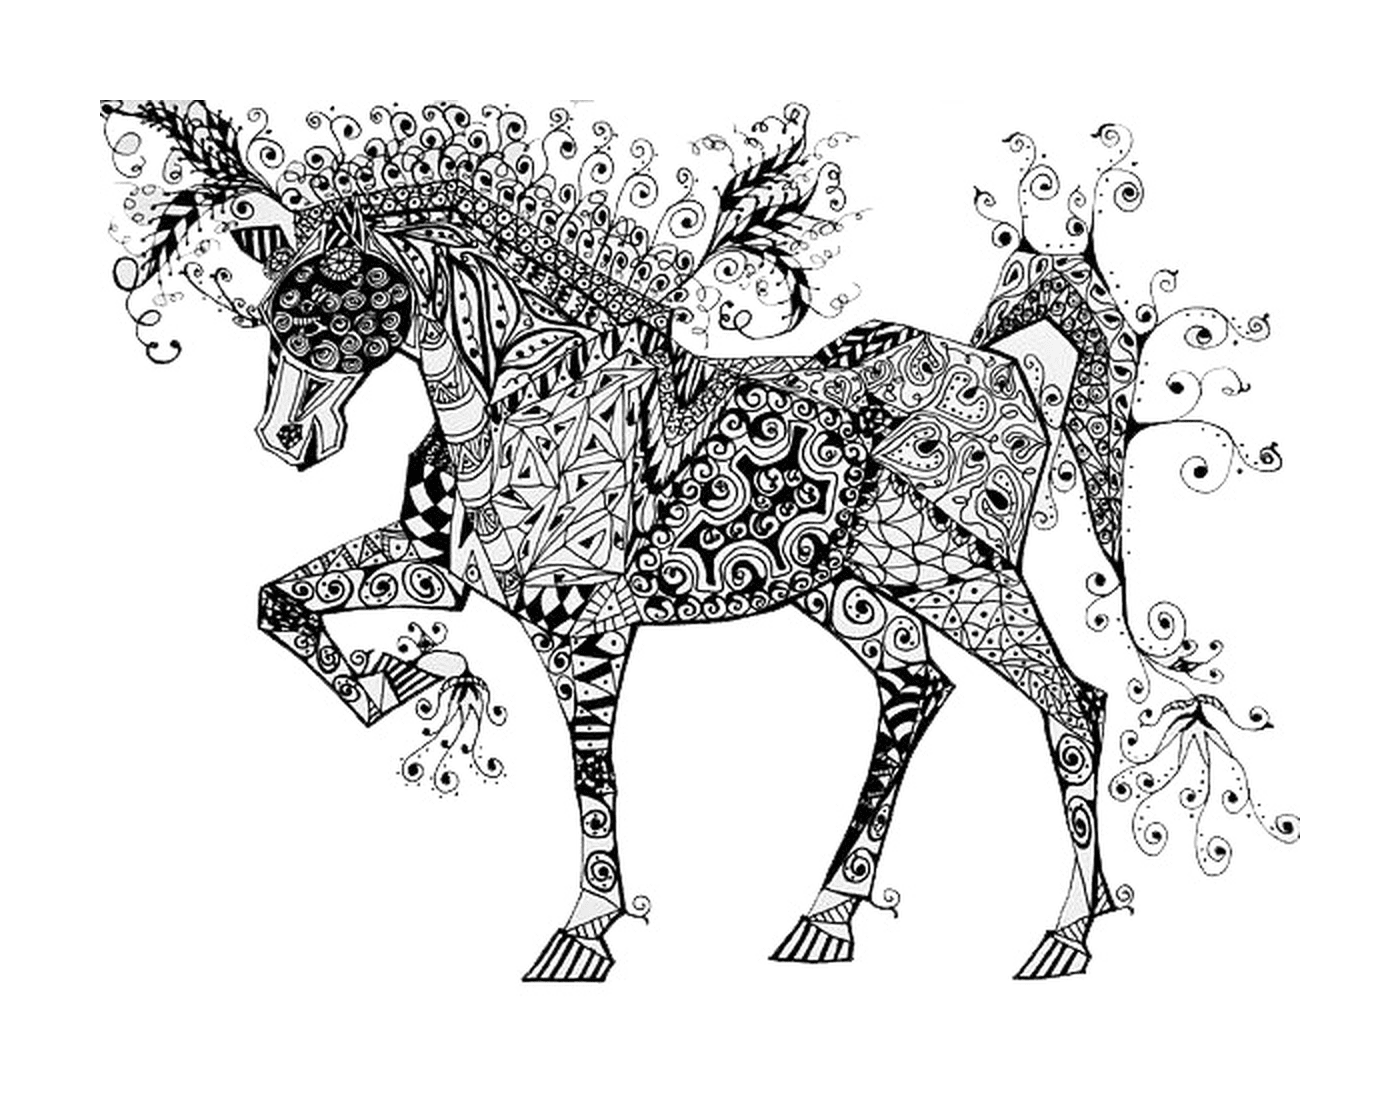  Цирковая лошадь с зентанглевыми мотивами 